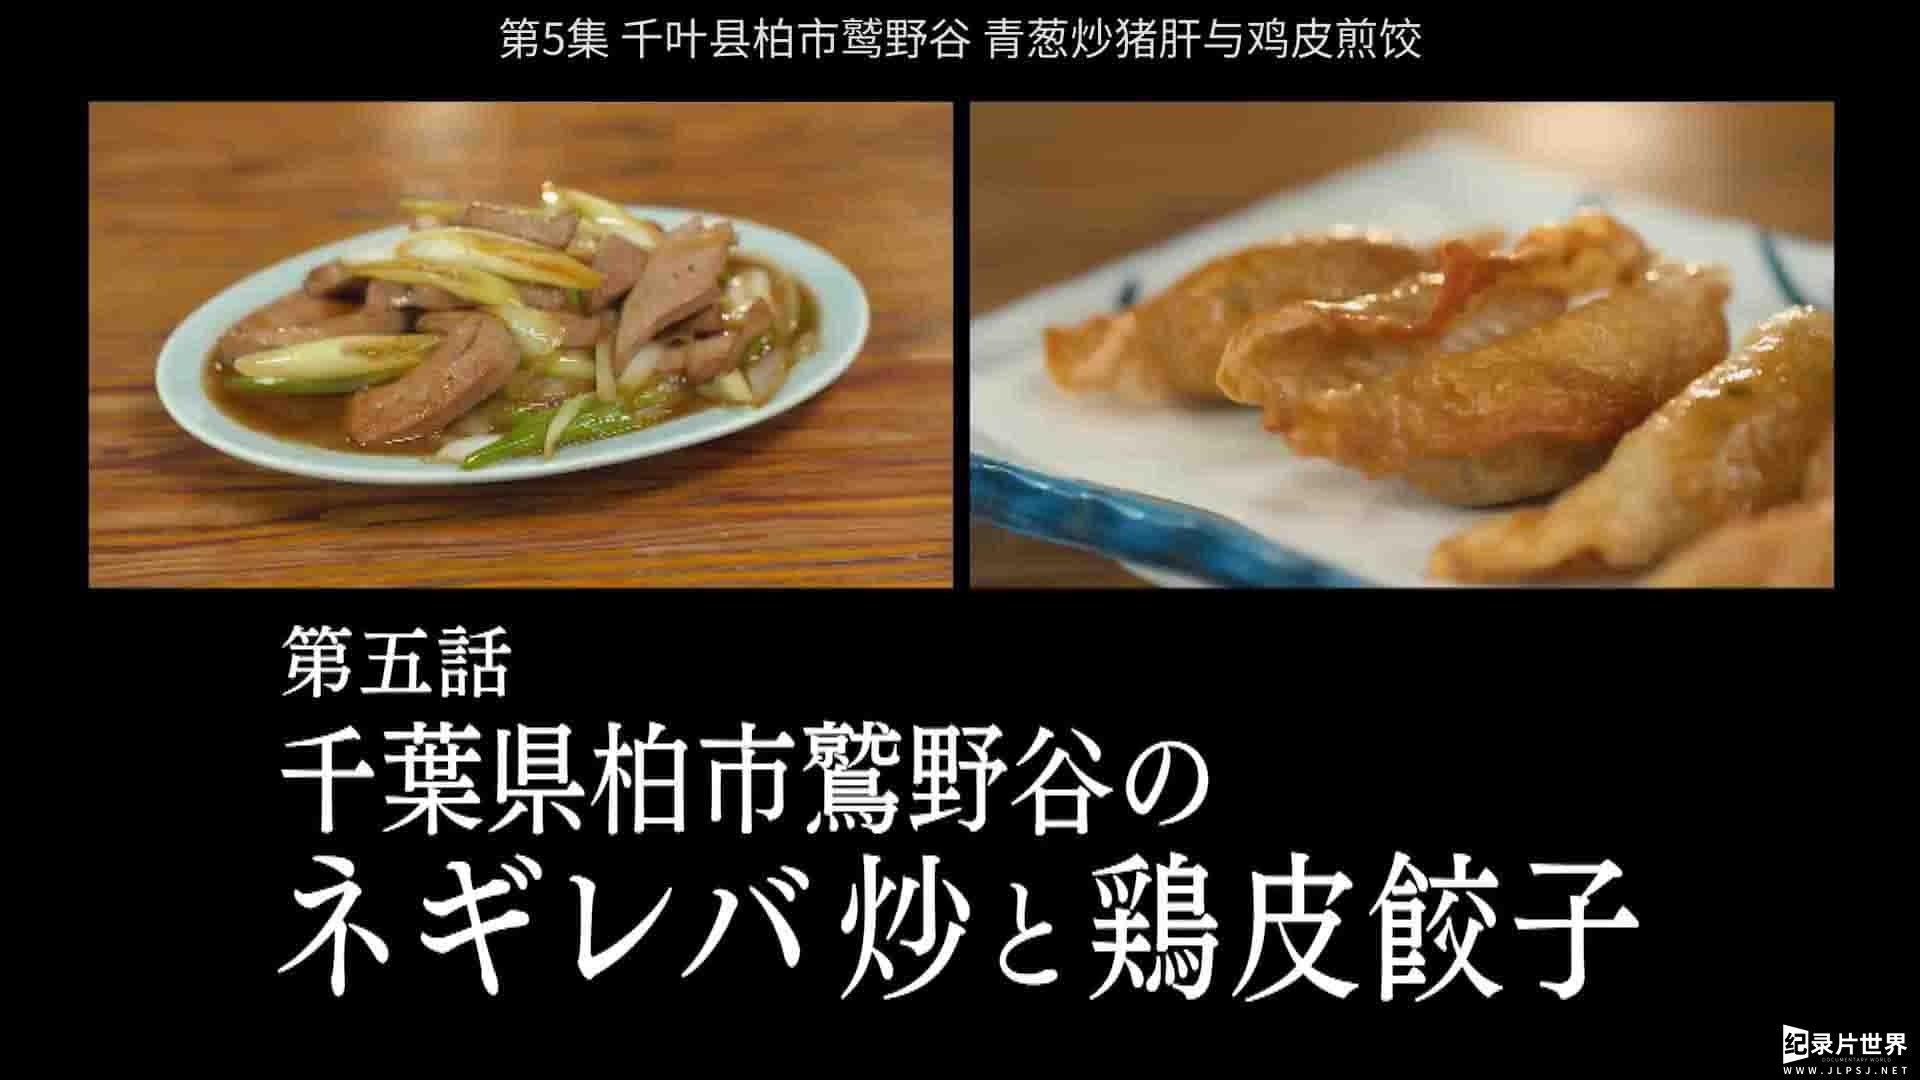 日本纪录片《孤独的美食家》全14集